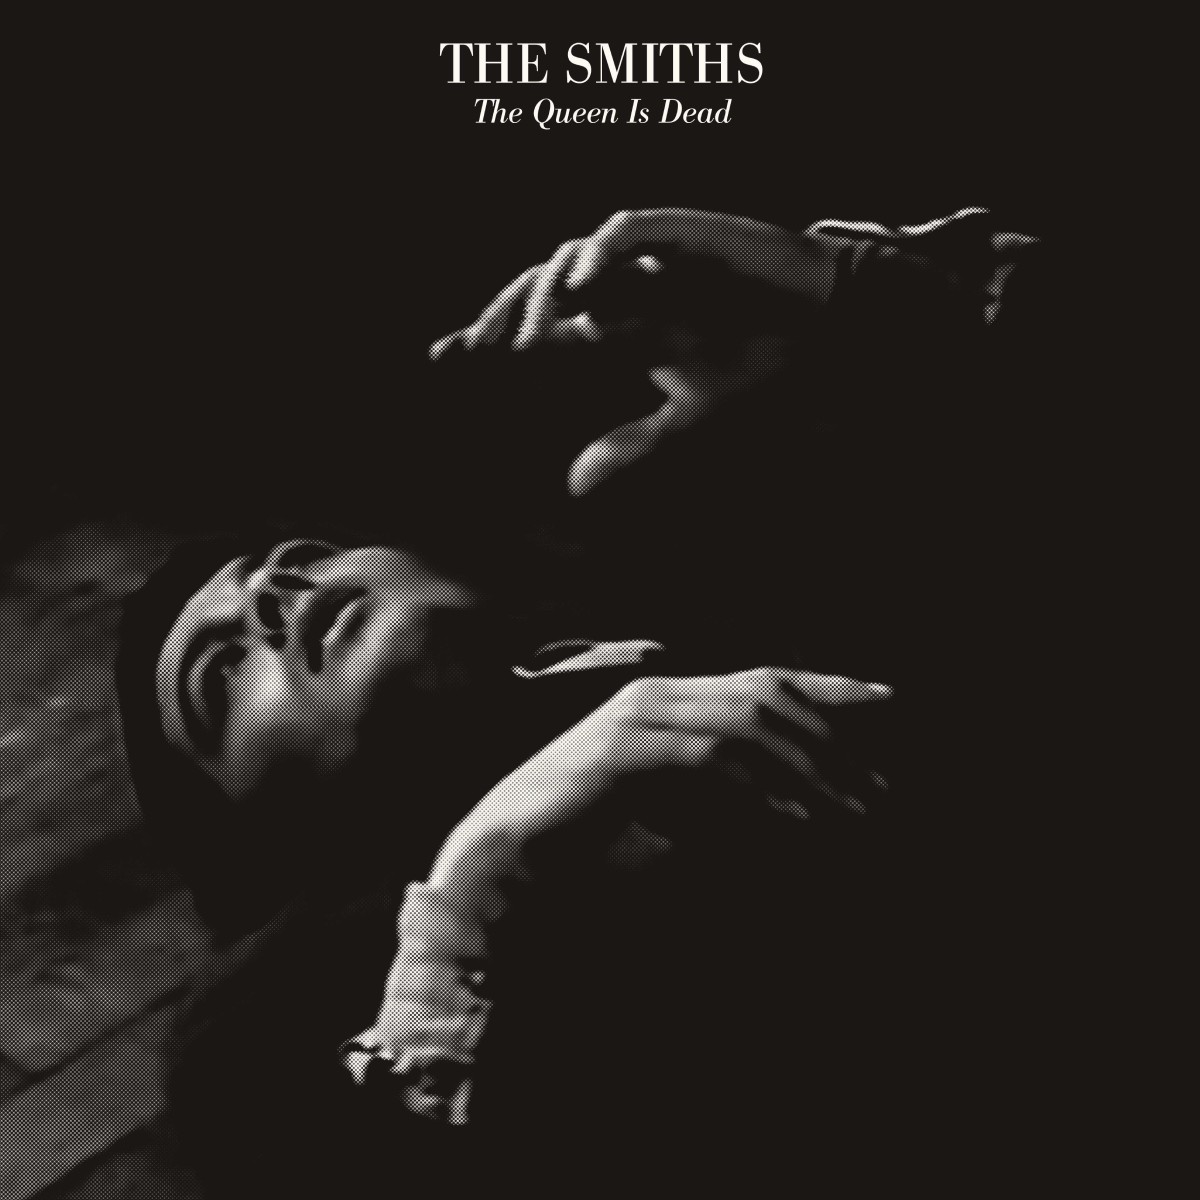 The Queen Is Dead (1986) - The Smiths (capa do álbum)